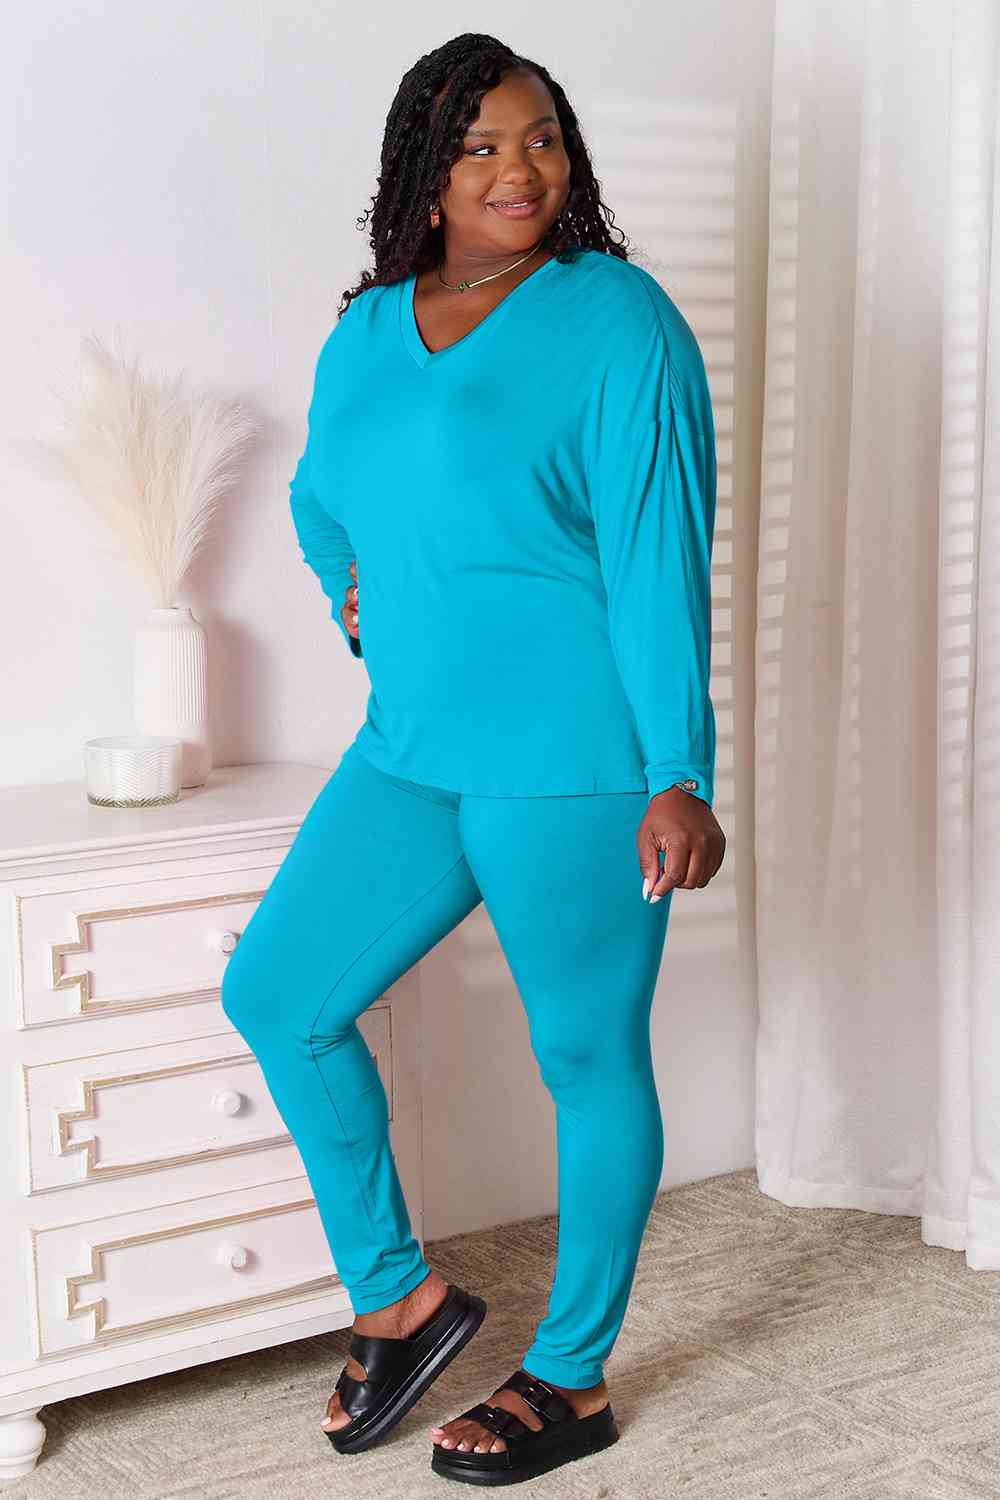 Basic Bae 2 pcs V Neck Soft Rayon Long Sleeve Top and Pants Loungewear Set Sleepwear & Loungewear jehouze Sky Blue S 